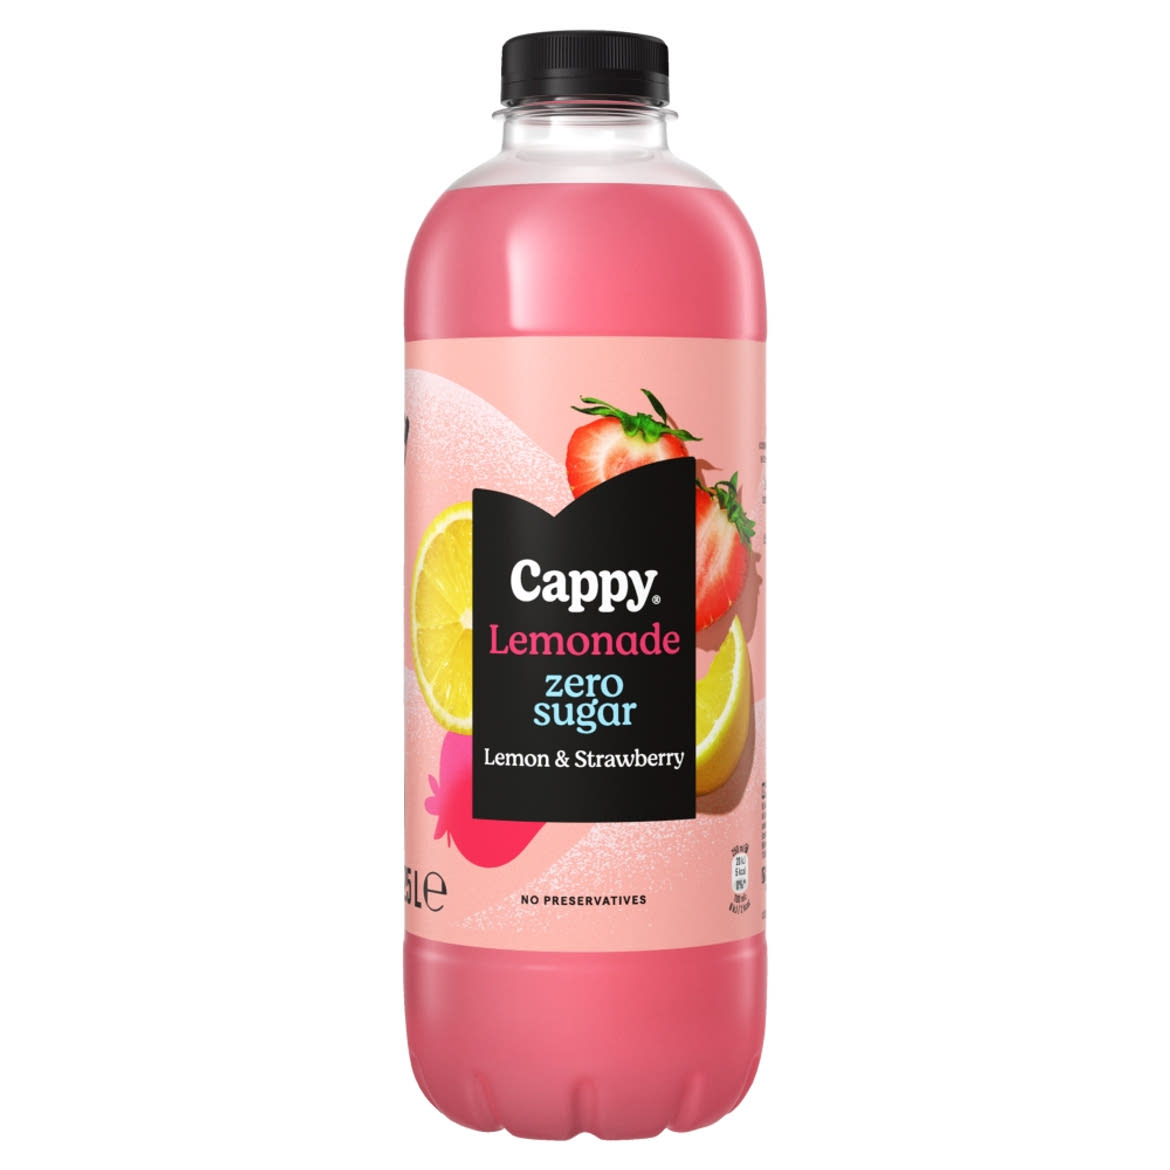 Cappy Lemonade Lemon & Strawberry Zero Sugar szénsavmentes, citromos üdítőital eperlével és édesítőszerekkel